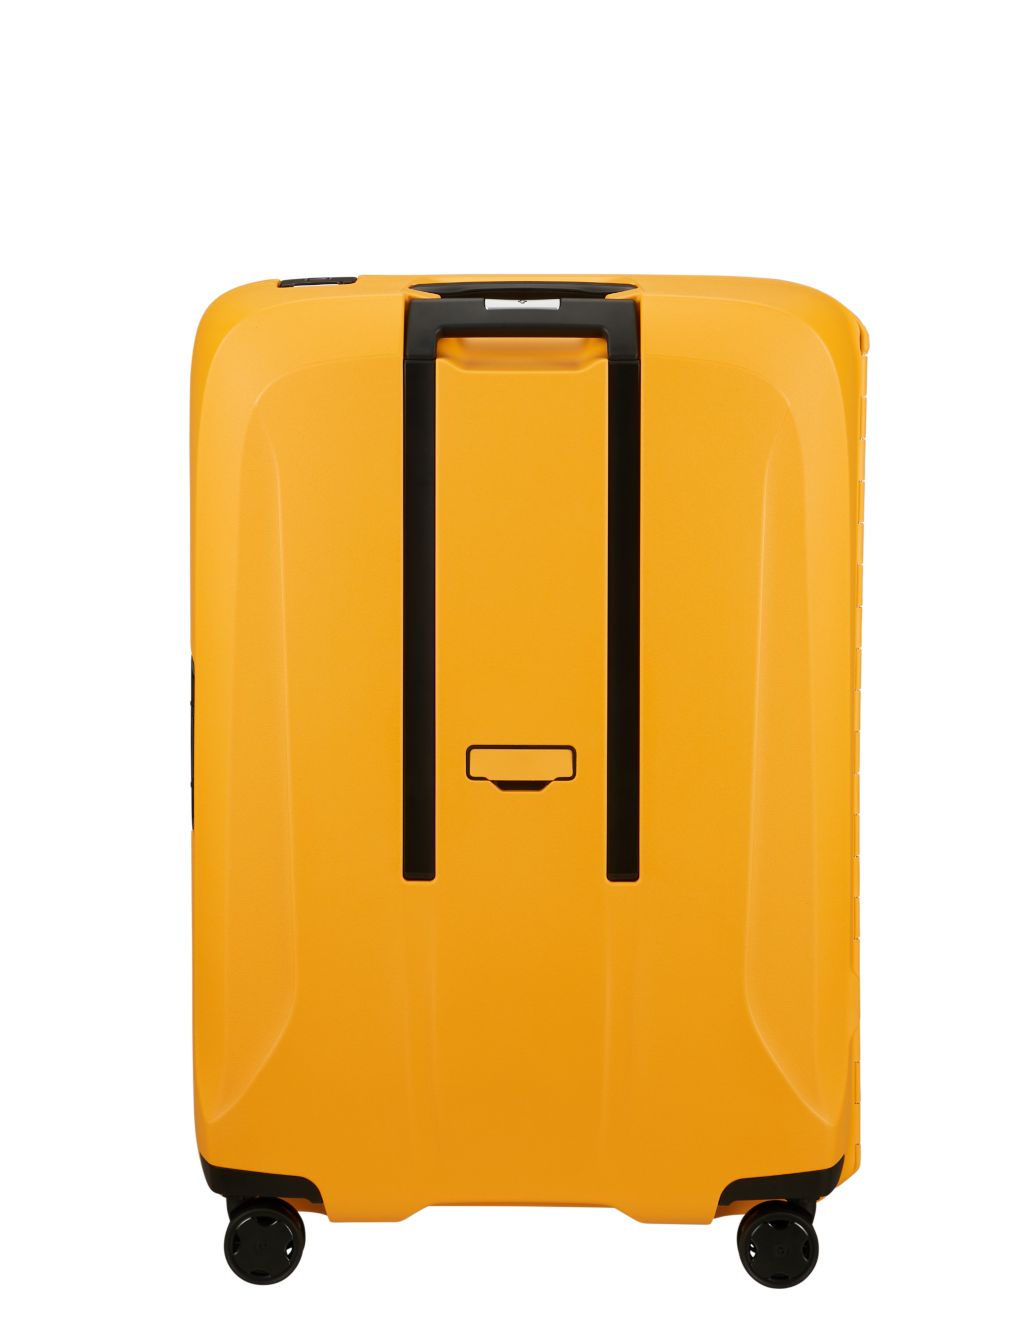 Essens 4 Wheel Hard Shell Large Suitcase image 2